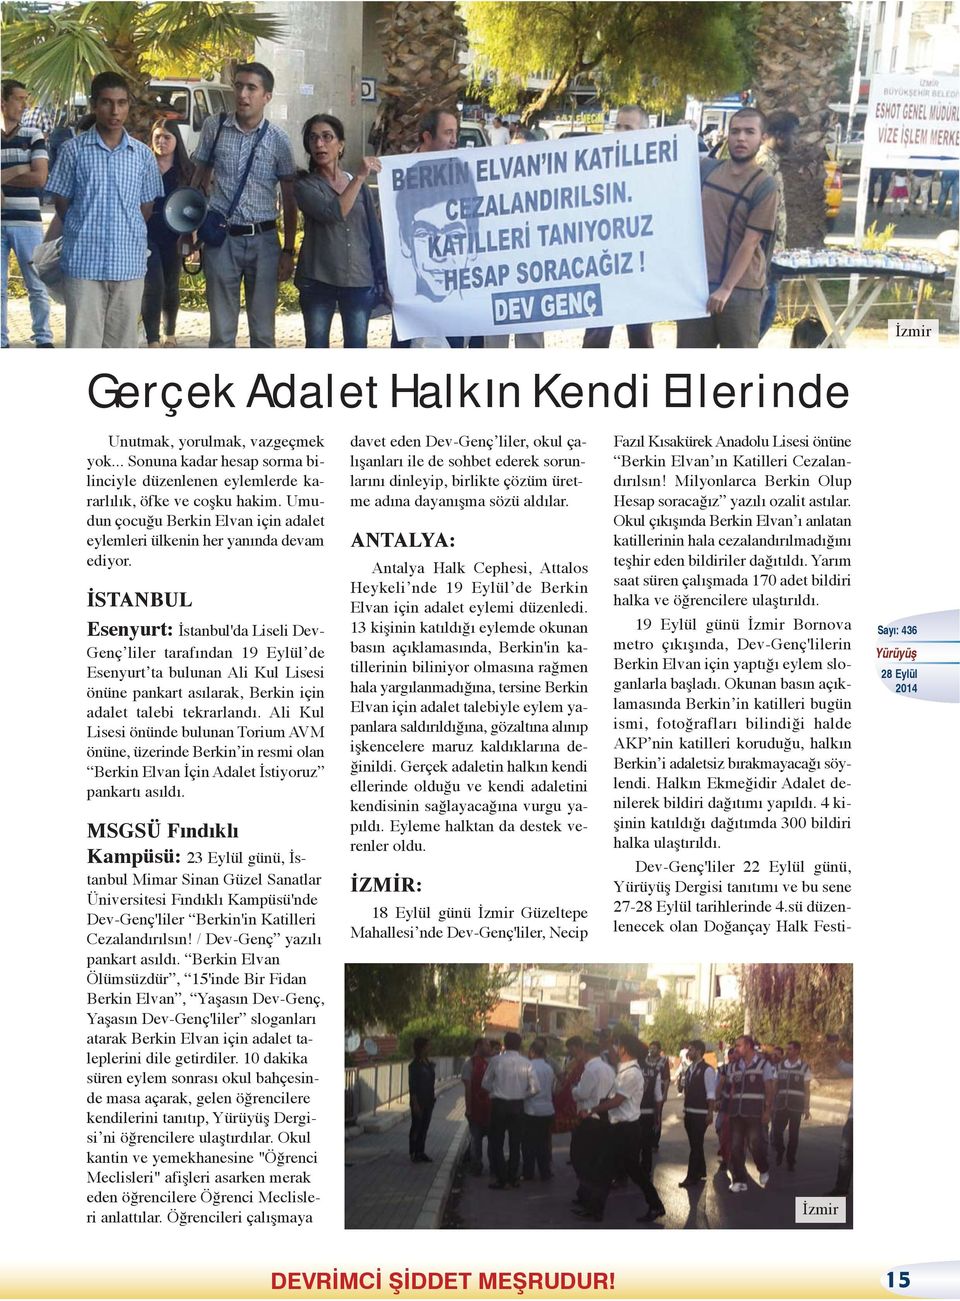 İSTANBUL Esenyurt: İstanbul'da Liseli Dev- Genç liler tarafından 19 Eylül de Esenyurt ta bulunan Ali Kul Lisesi önüne pankart asılarak, Berkin için adalet talebi tekrarlandı.